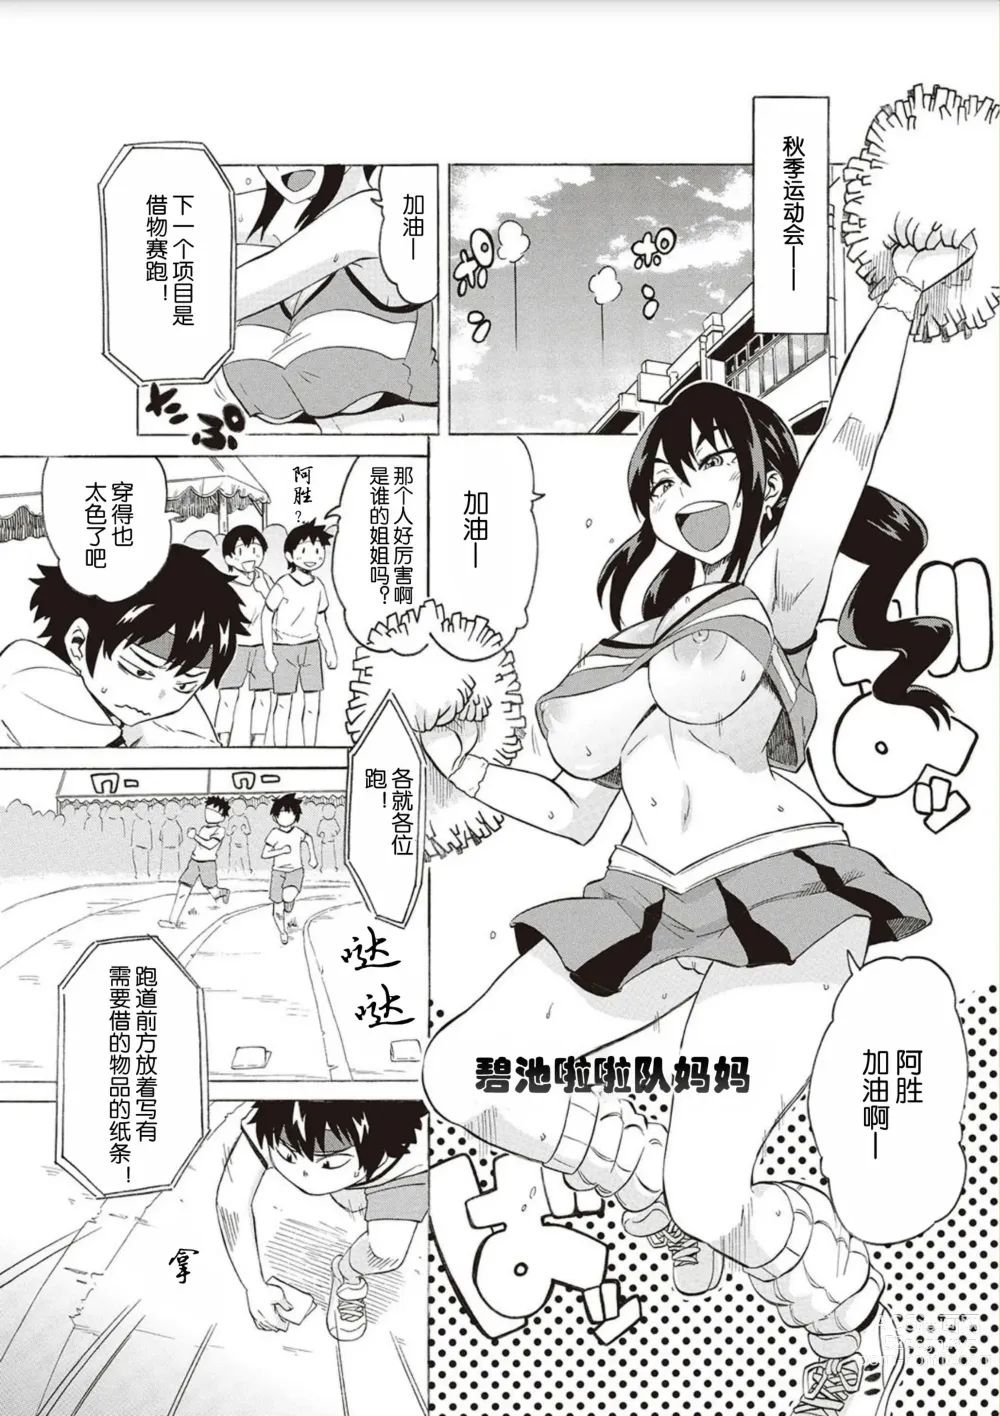 Page 1 of manga BitCheer Mama